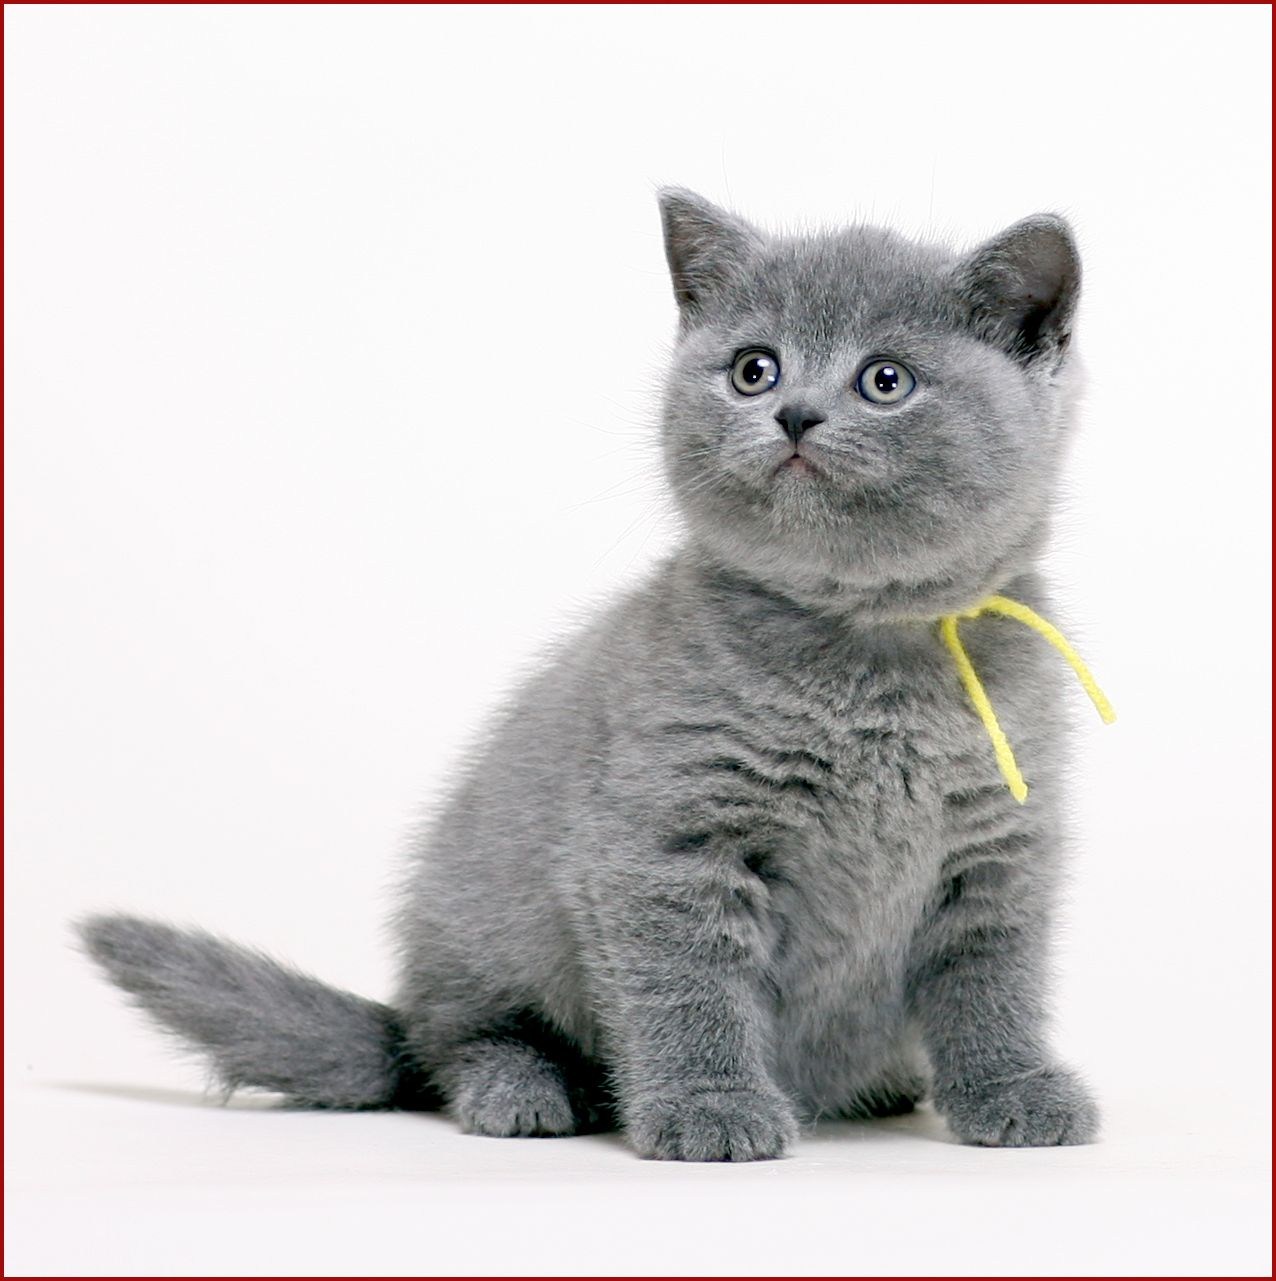 Kitten1bot. Британская короткошёрстная кошка. Британский короткошерстный кот голубой. Британский короткошерстный кот серый. Британская голубая короткошерстная.